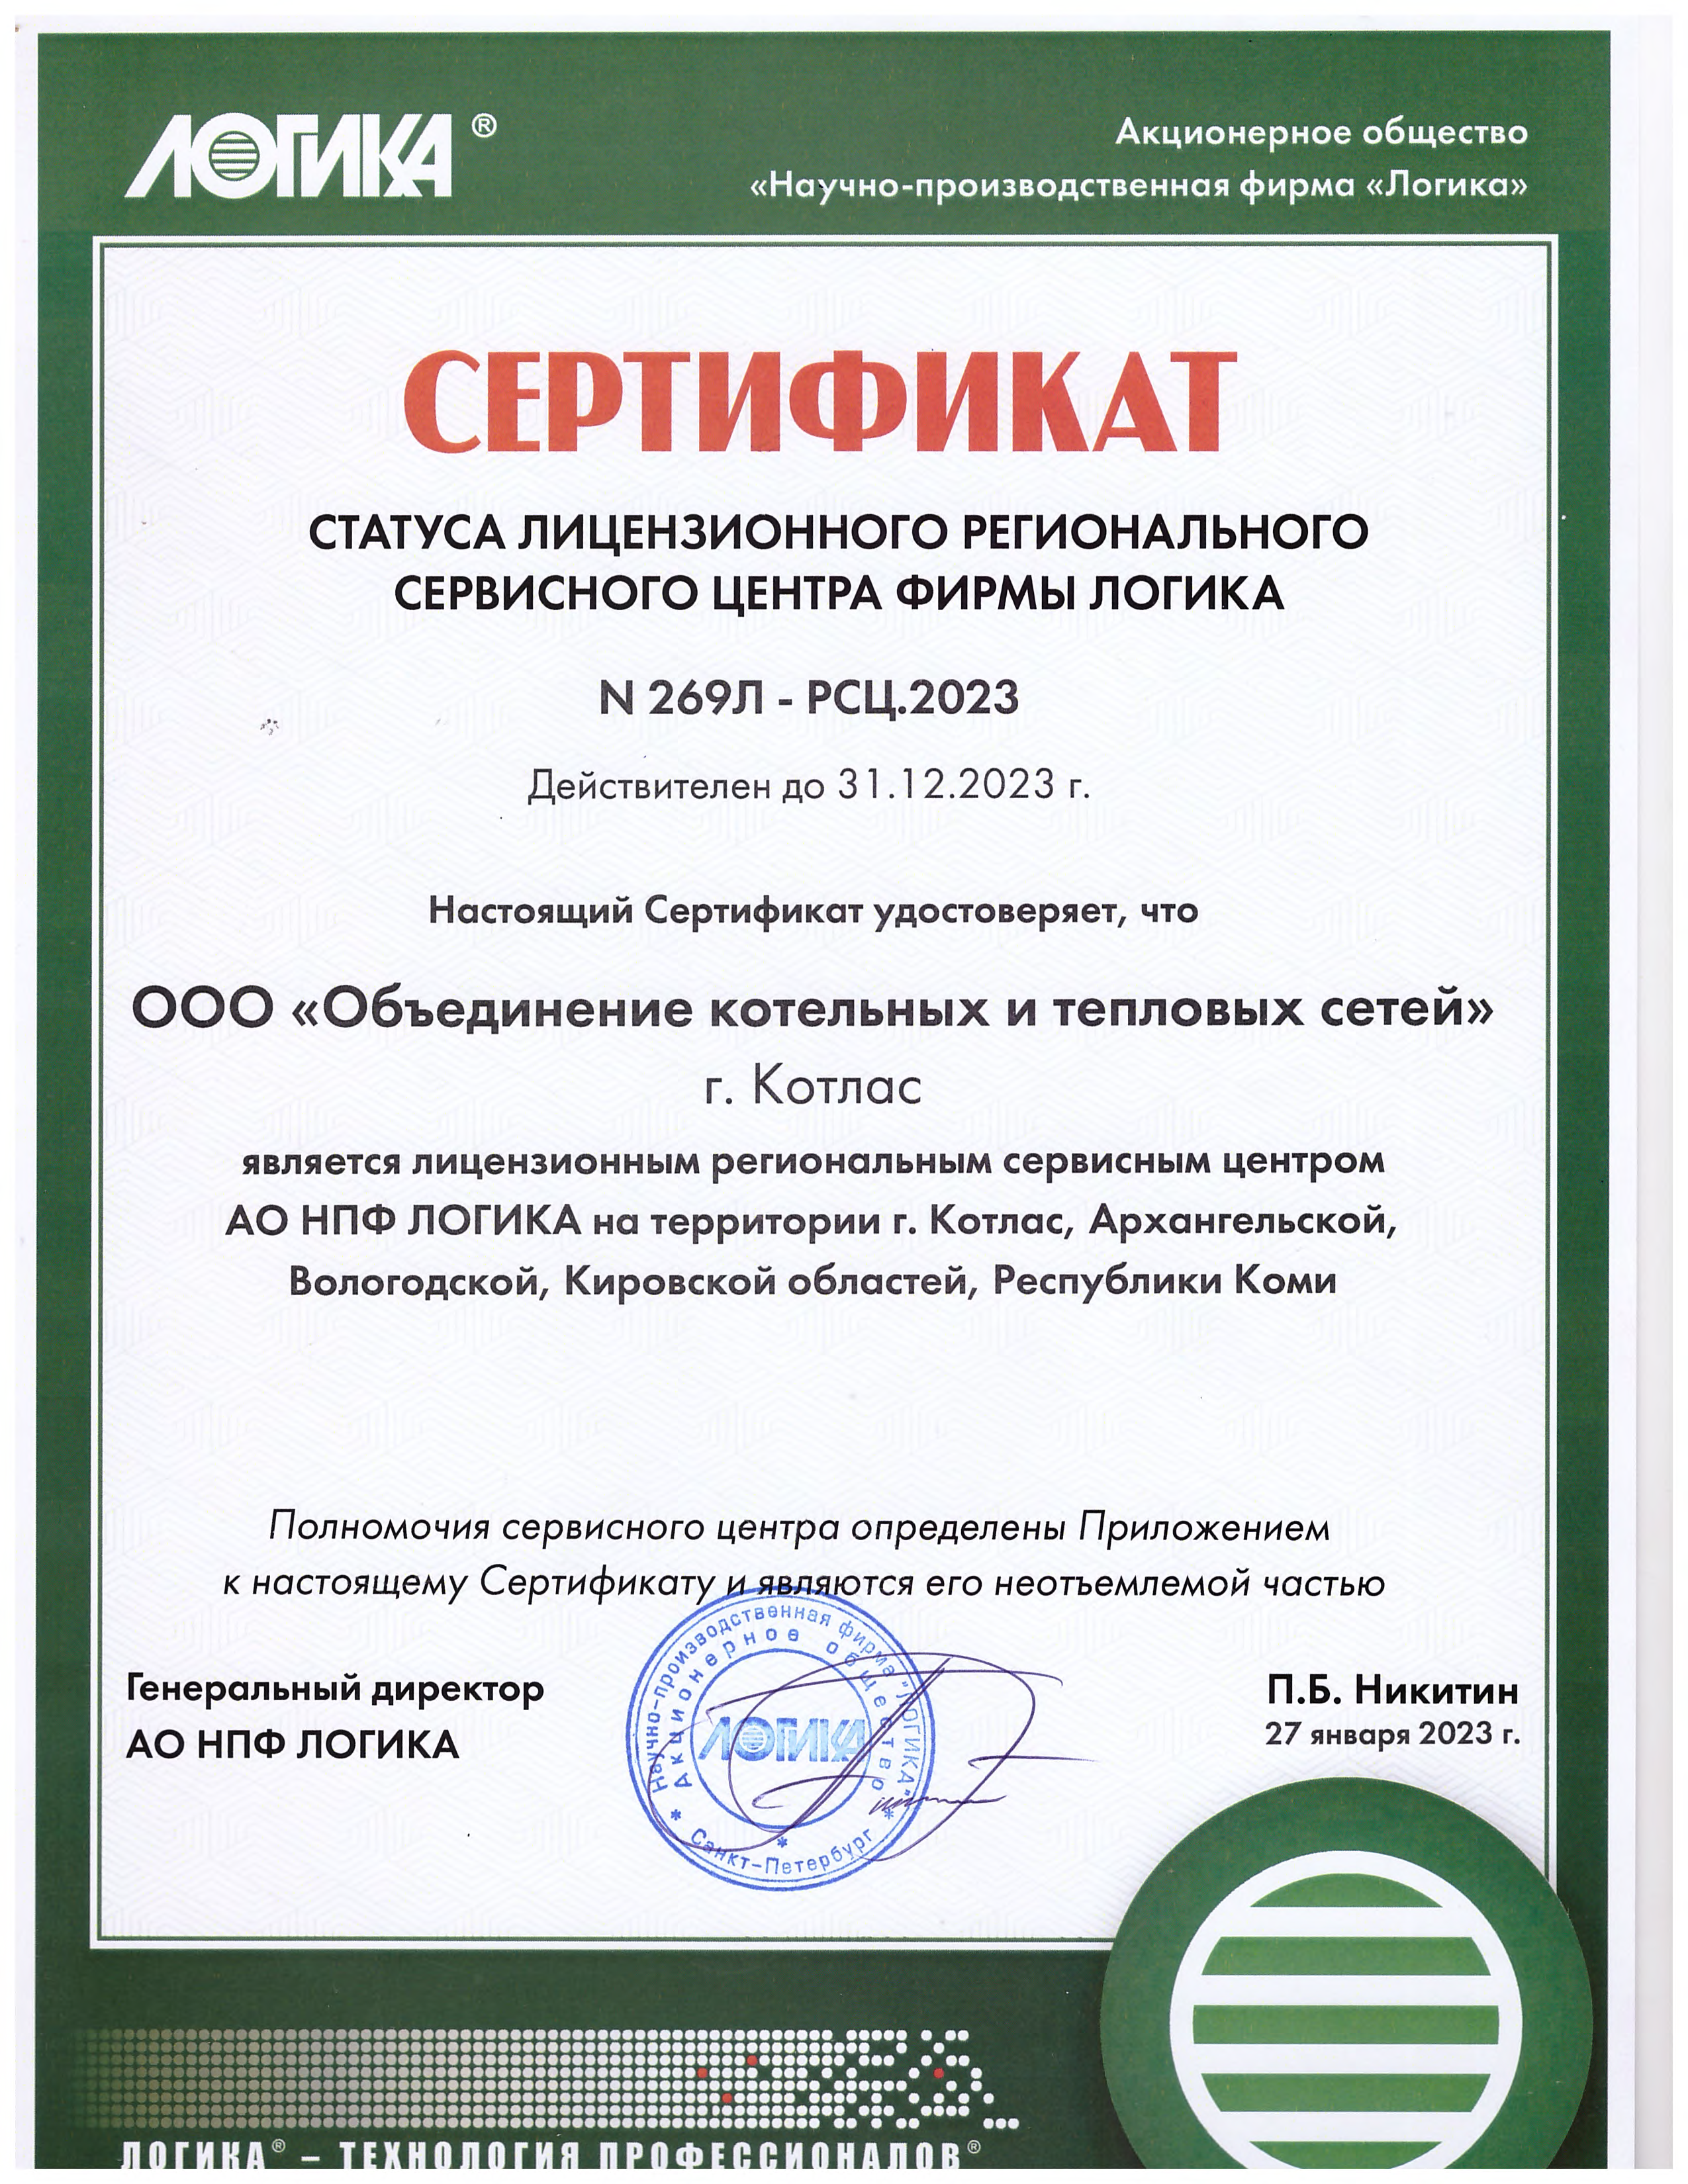 Сертификат сервисного центра "Логика"